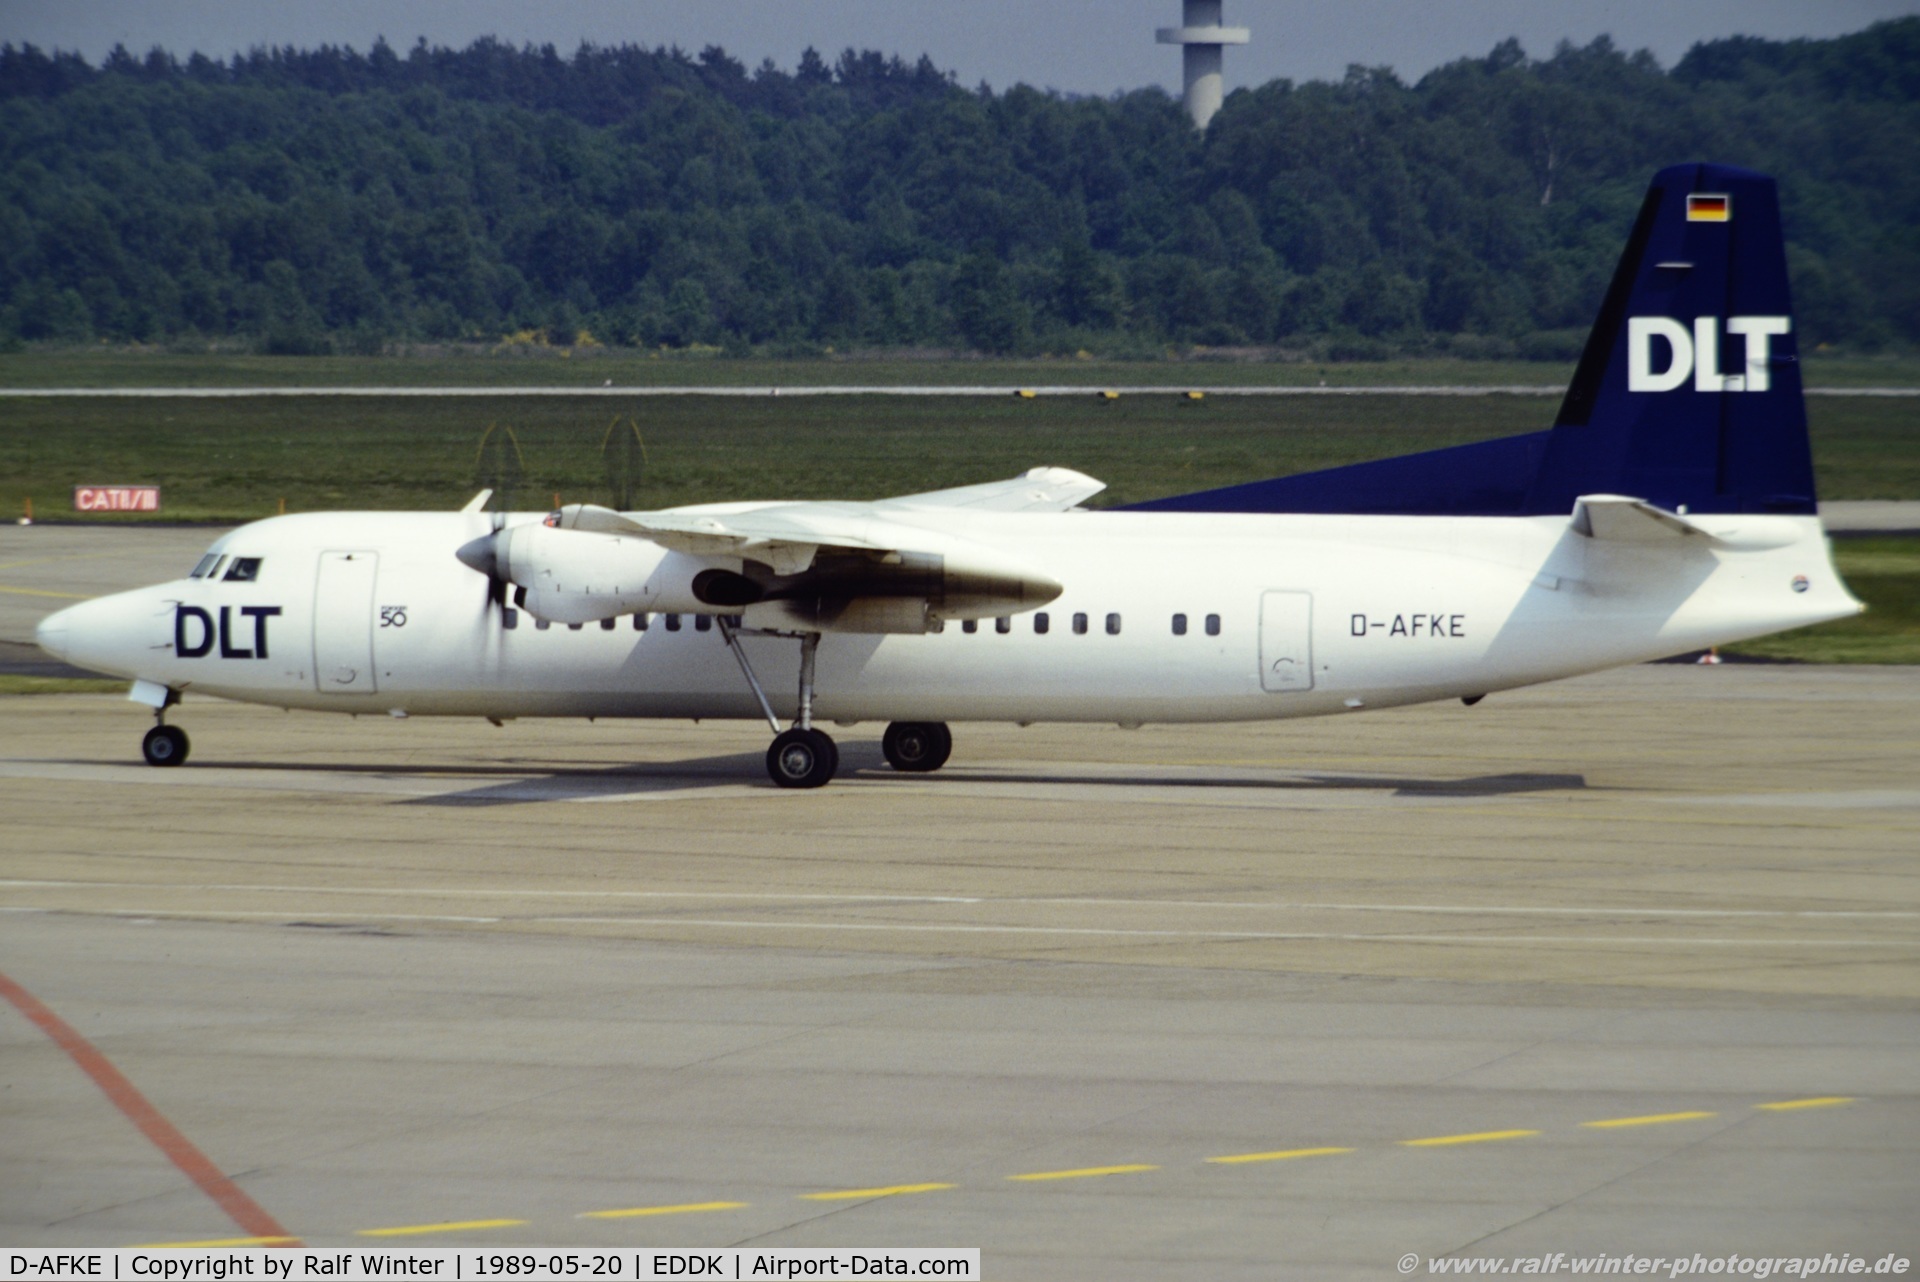 D-AFKE, 1988 Fokker 50 C/N 20133, Fokker F50 F-27-050 - DW DLT DLT - 20133- D-AFKE - 20.05.1989 - CGN